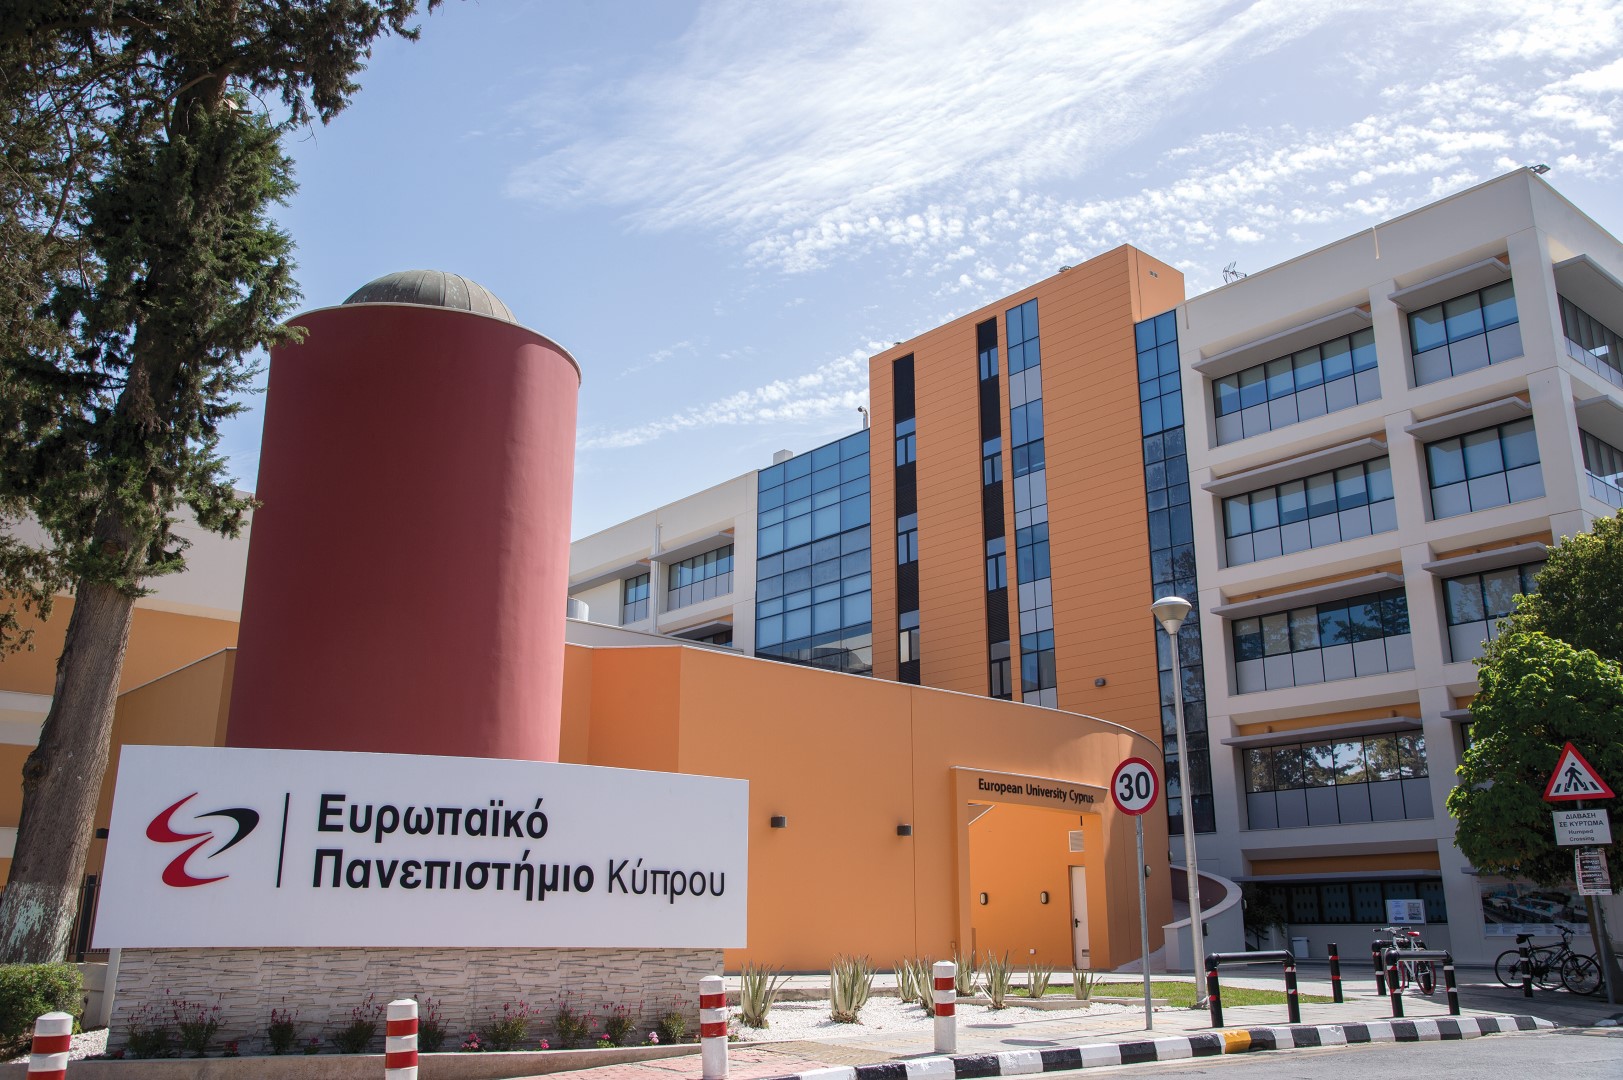 Το Ευρωπαϊκό Πανεπιστήμιο Κύπρου συντονίζει πρωτοποριακή έρευνα για την πανδημία COVID-19 στην Κύπρο